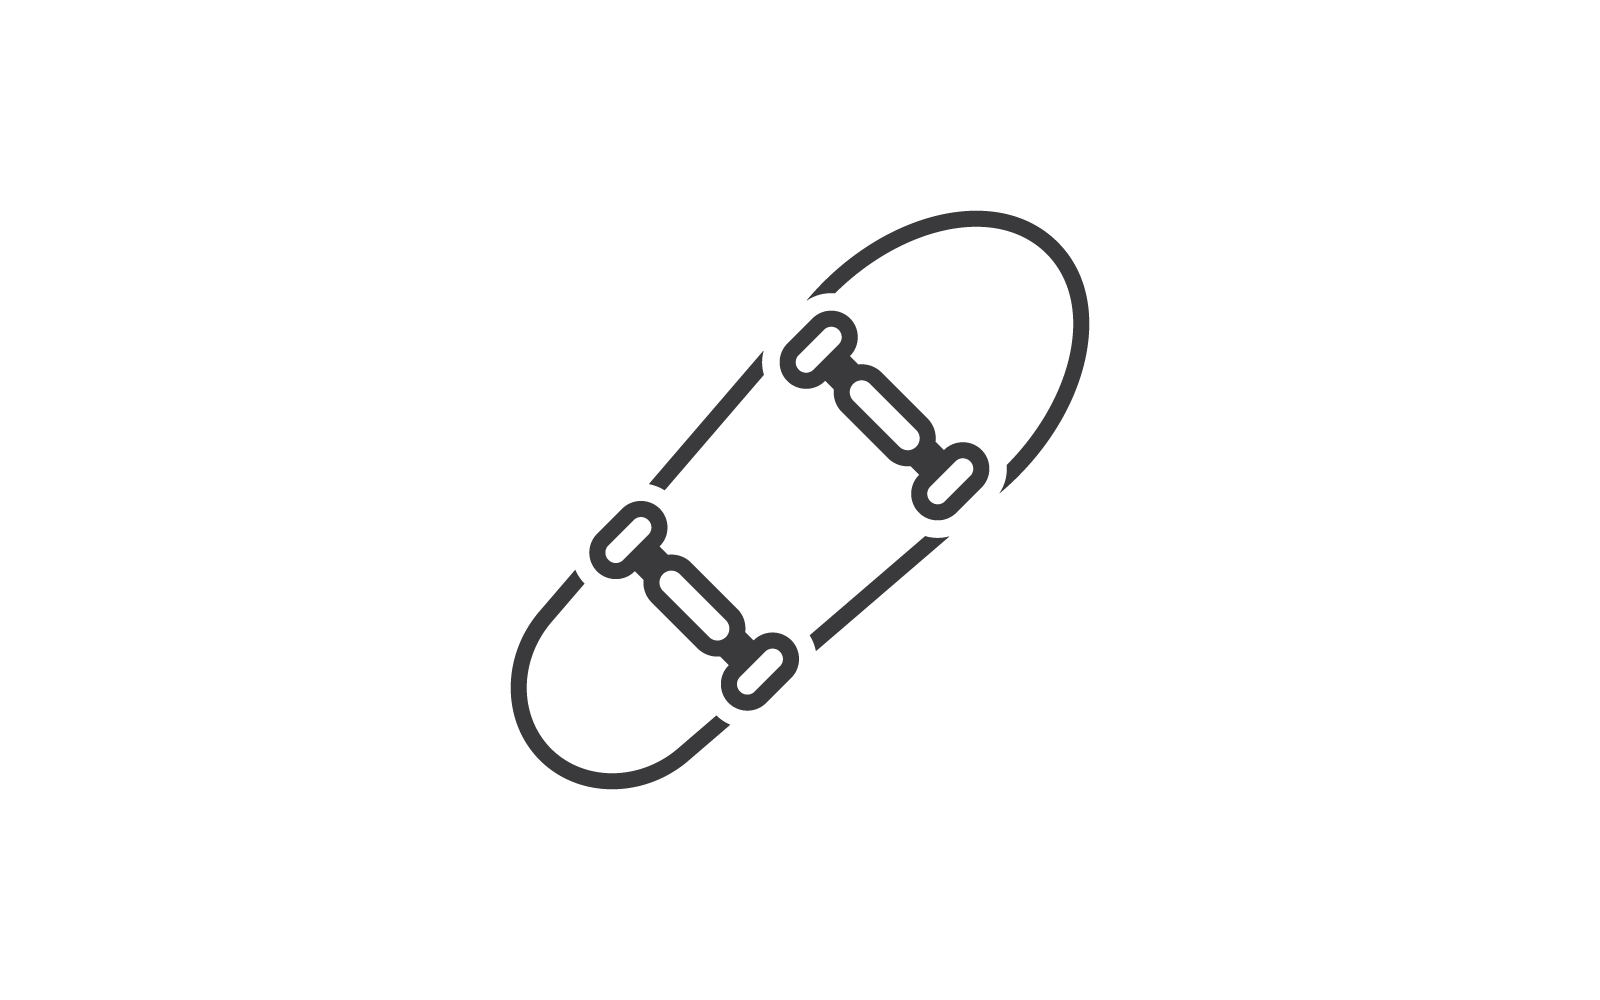 Векторная плоская иллюстрация значка скейтборда является логотипом и значком для спортивных развлечений для фигуристов